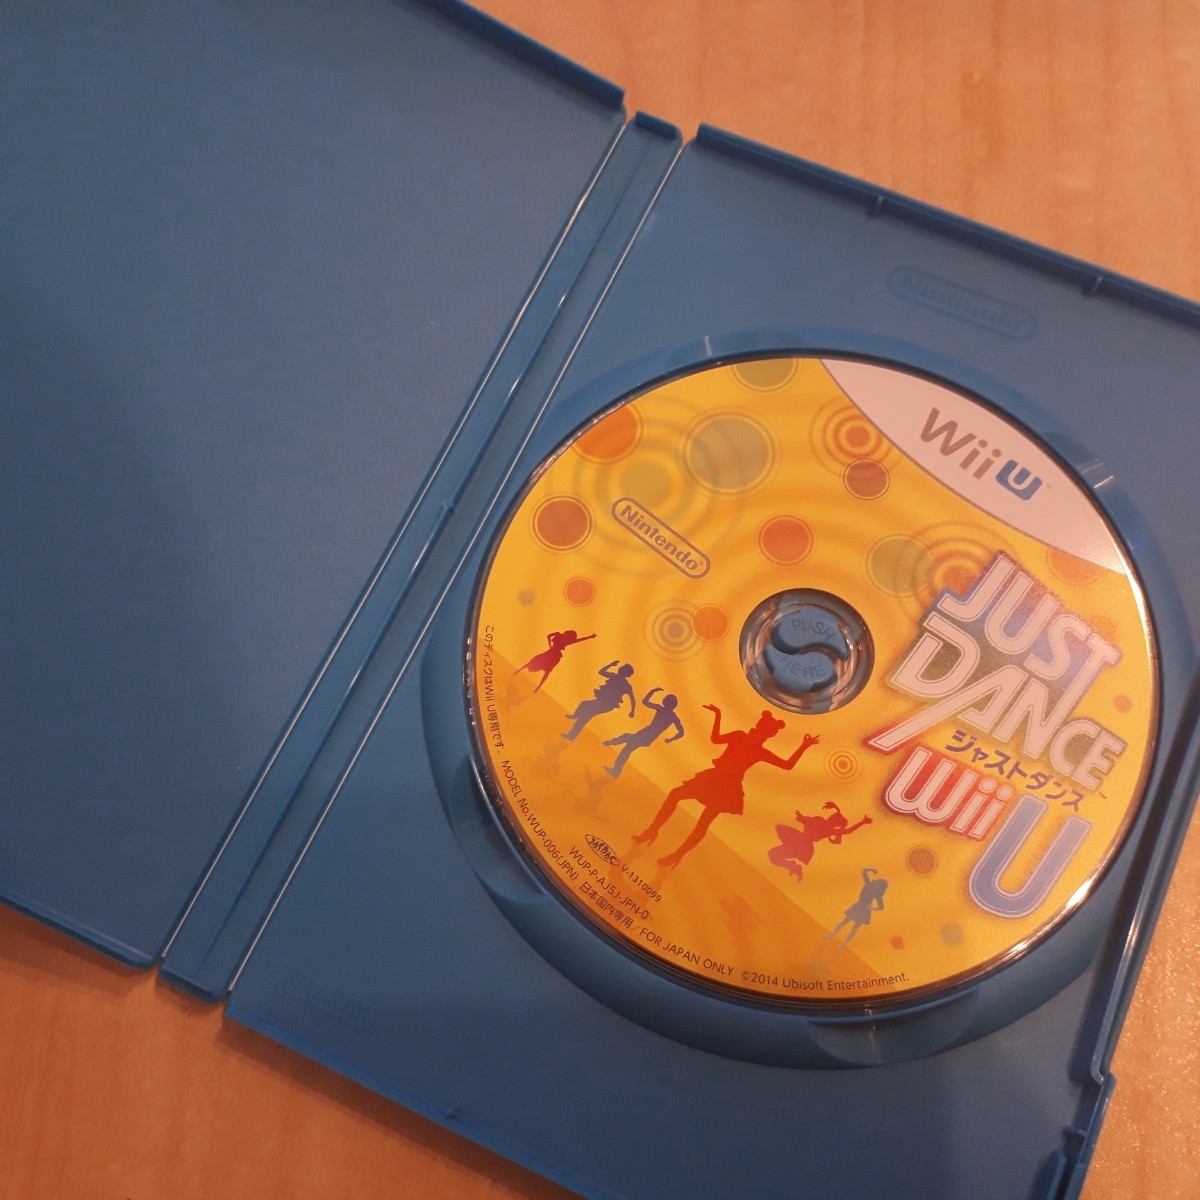 【送料無料】WiiU ジャストダンス ディスク ウィーユー ニンテンドー ソフト